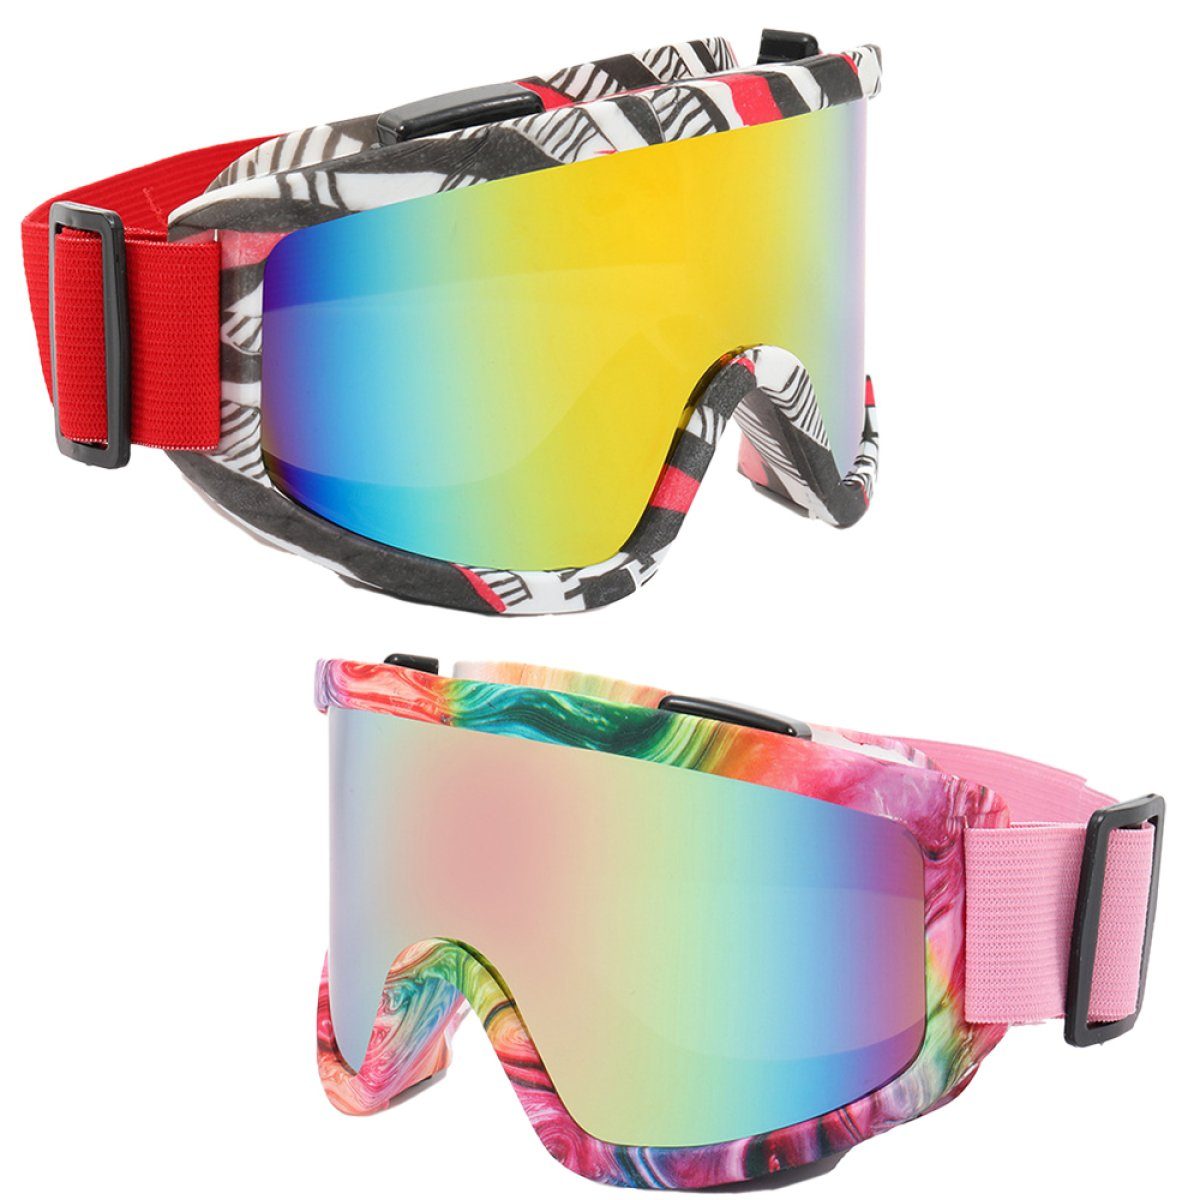 ZmdecQna Skibrille Unisex für Damen und Herren,UV-Schutz skibrille für brillenträger, Reduziert das Beschlagen, AugenschutzUV-Schutz Multicolour3